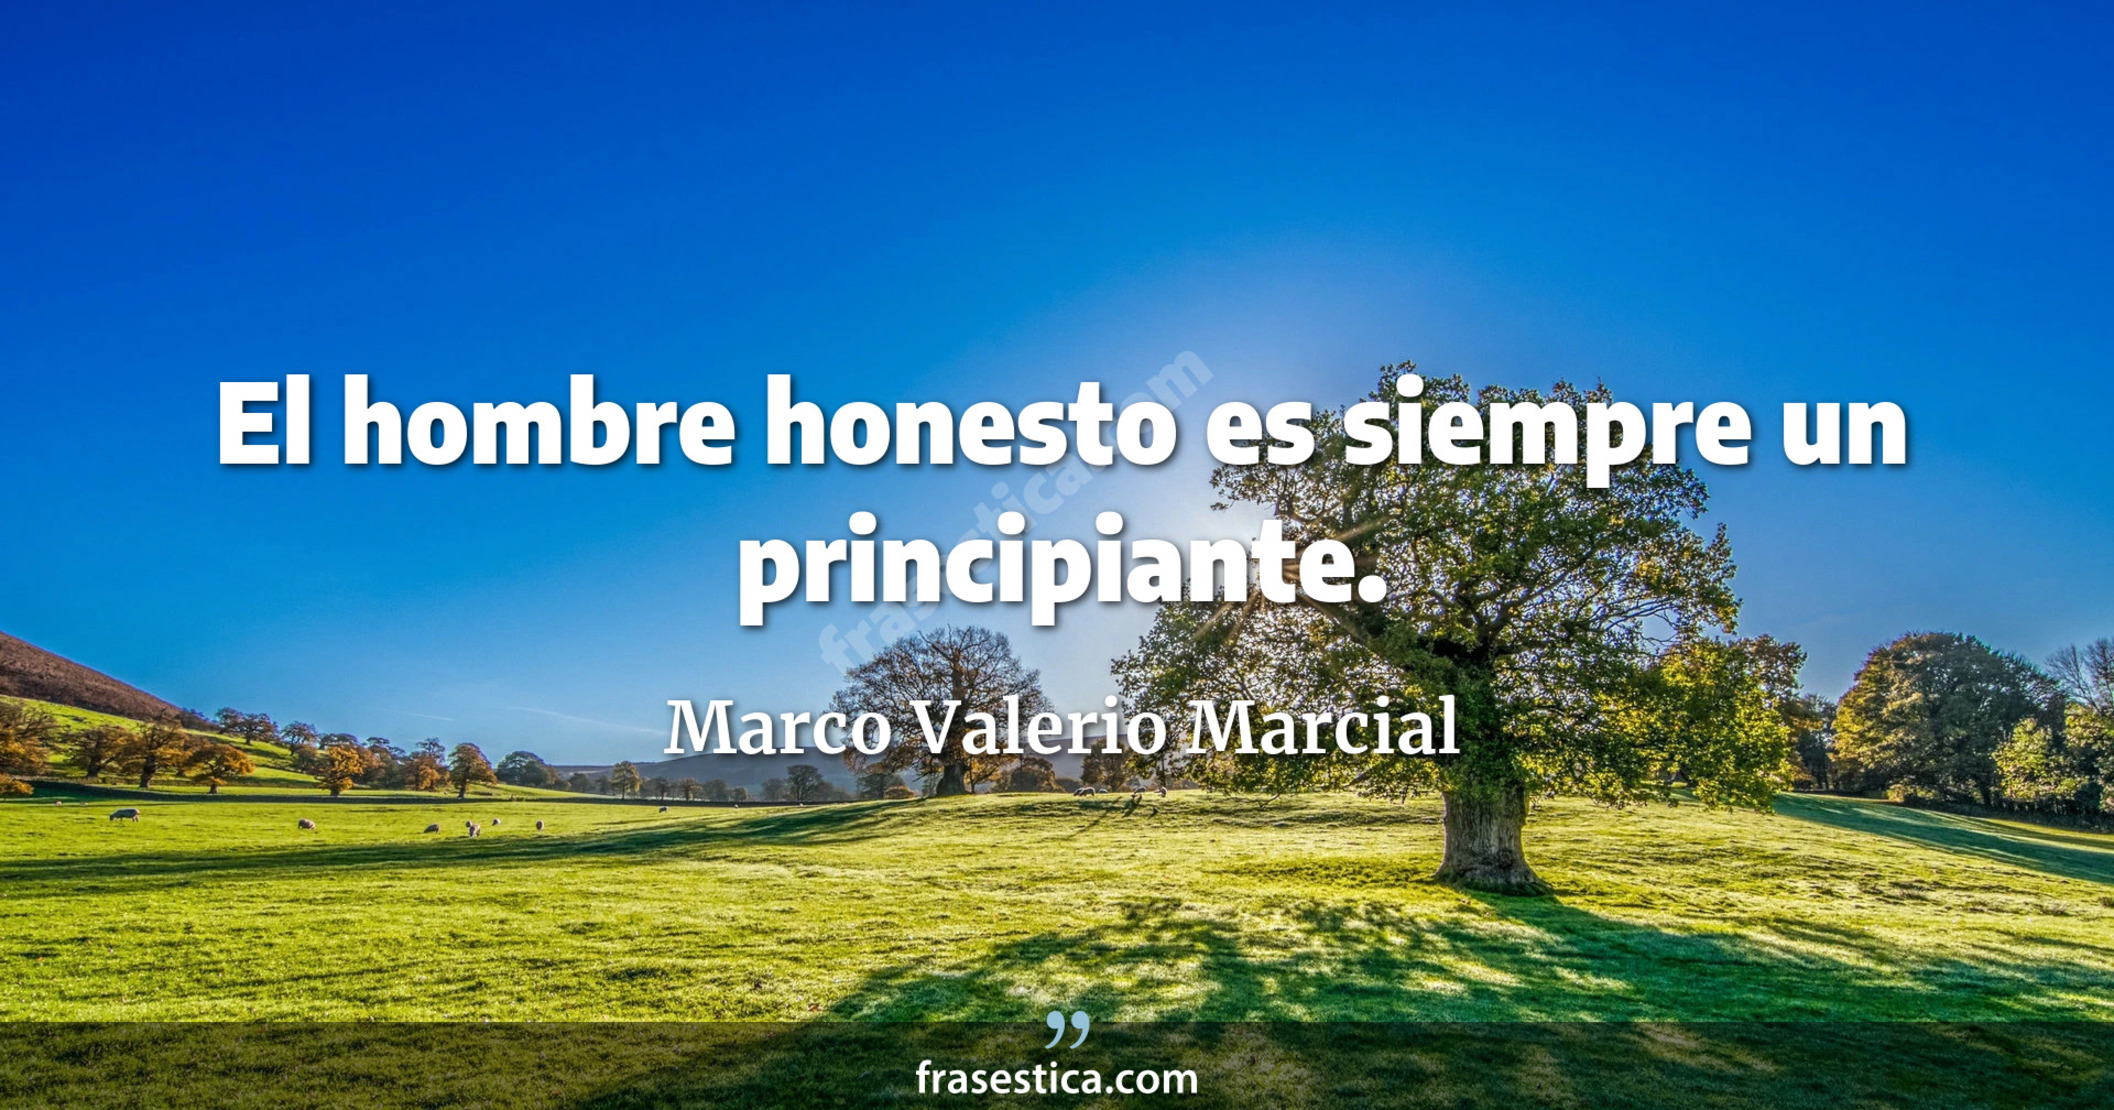 El hombre honesto es siempre un principiante. - Marco Valerio Marcial